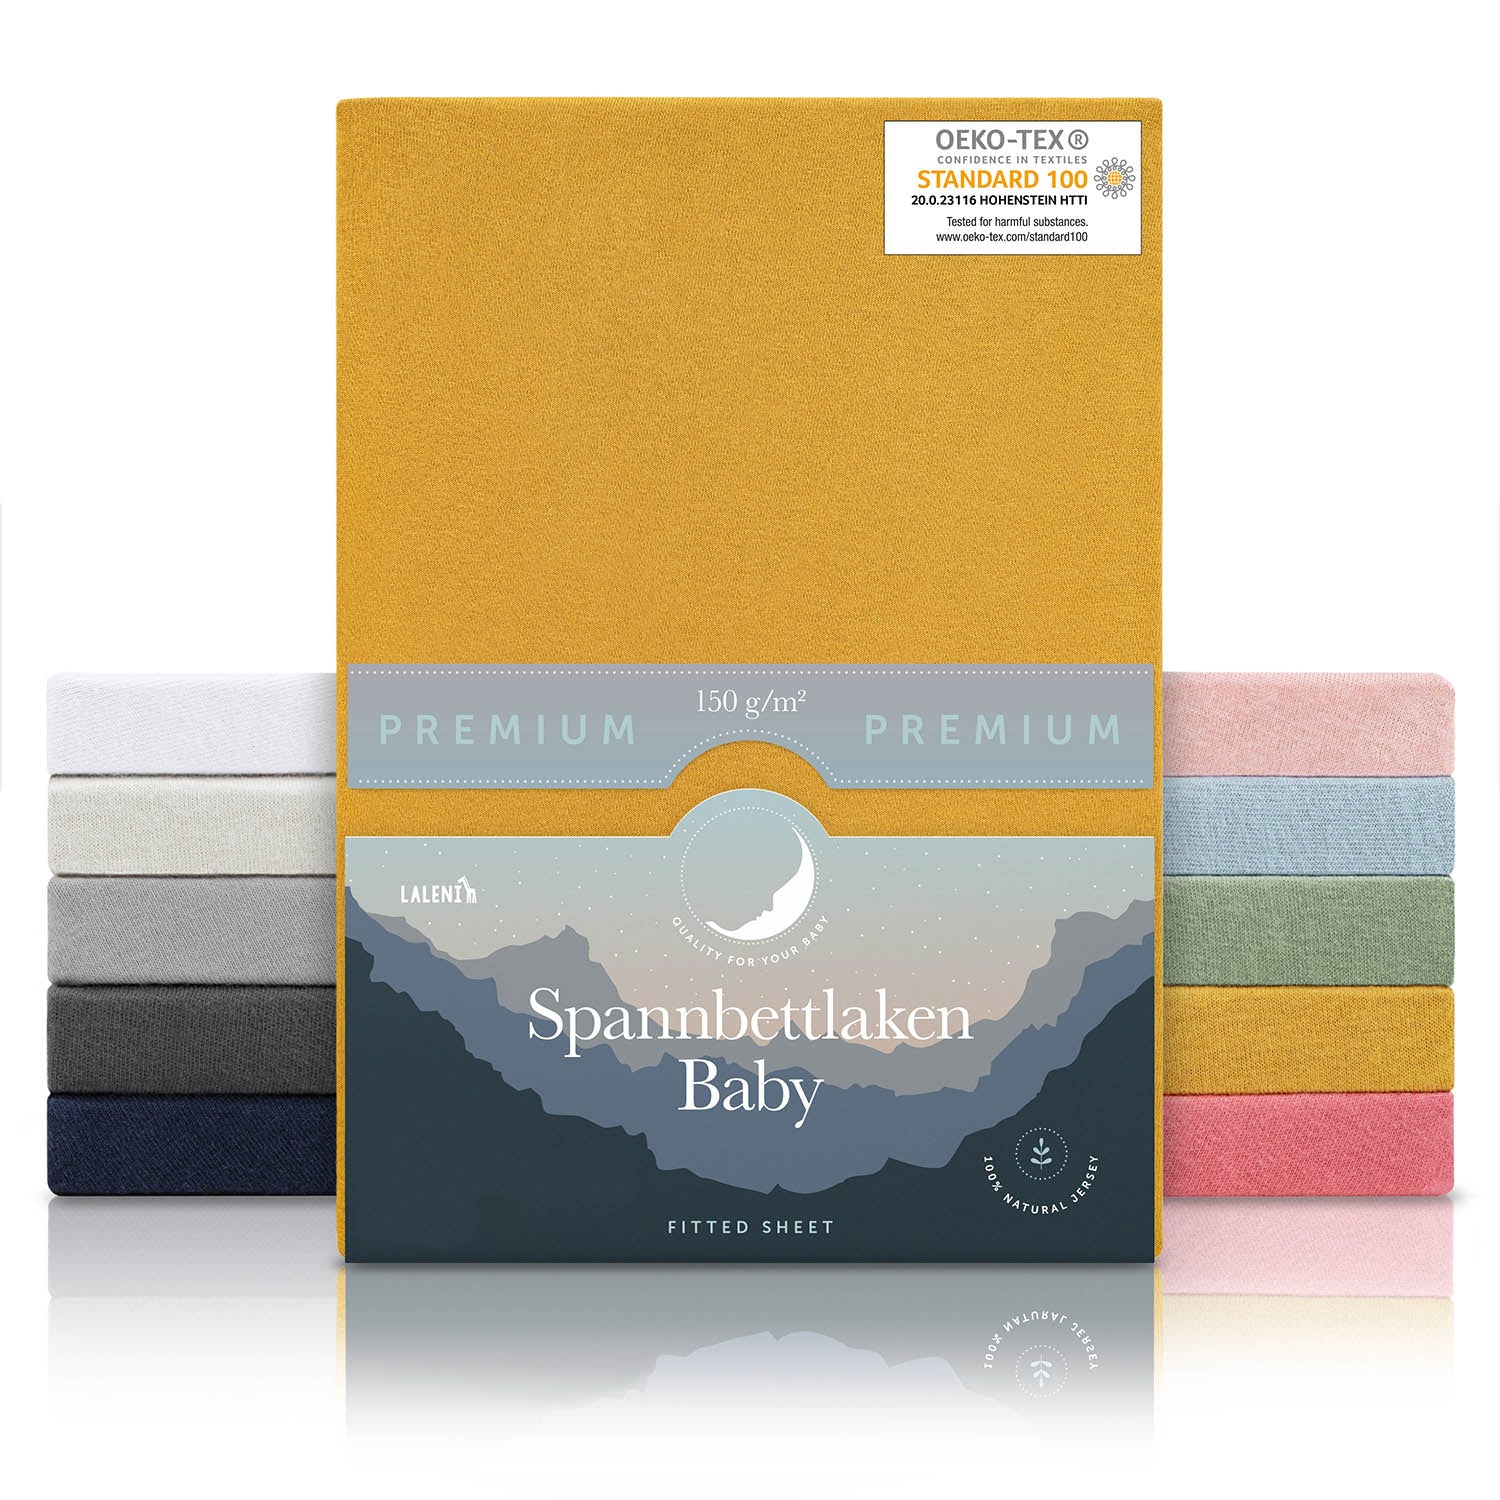 Verpackung von gelben Baby-Spannbettlaken mit OEKO-TEX Siegel und Angabe von 150 g/m² Qualität in verschiedenen Farben präsentiert